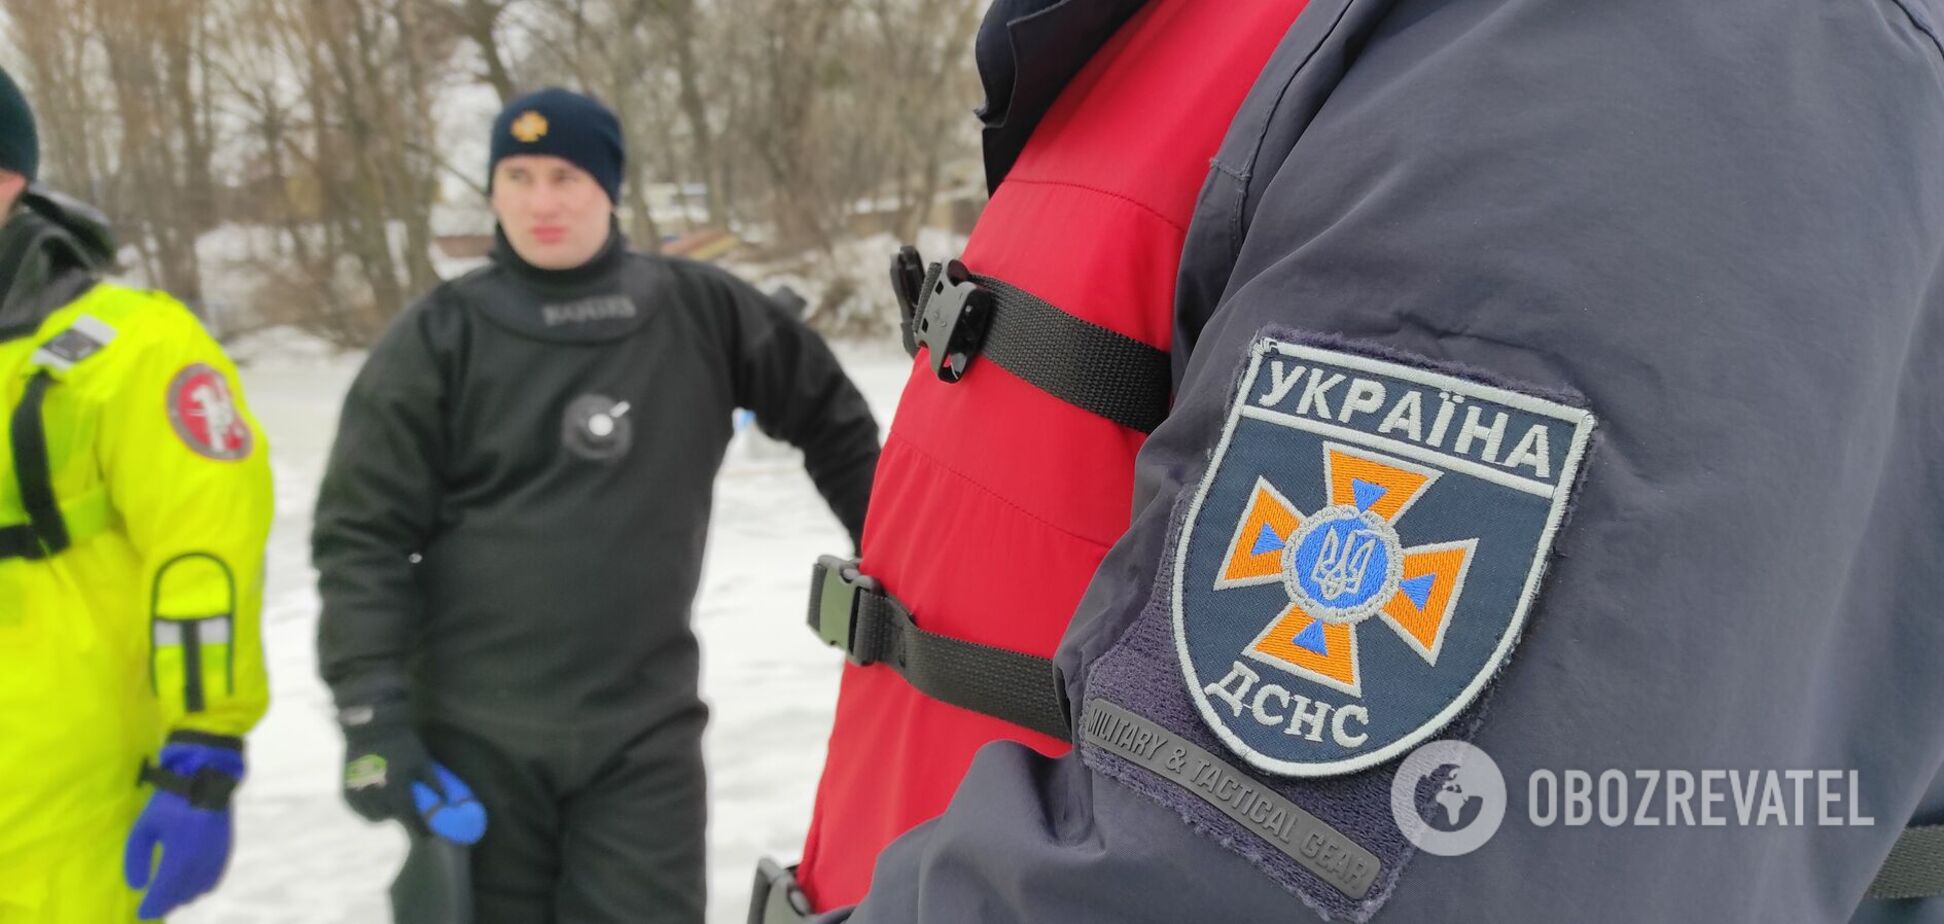 Спасатели постоянно проводят показательно профилактический рейд на льду